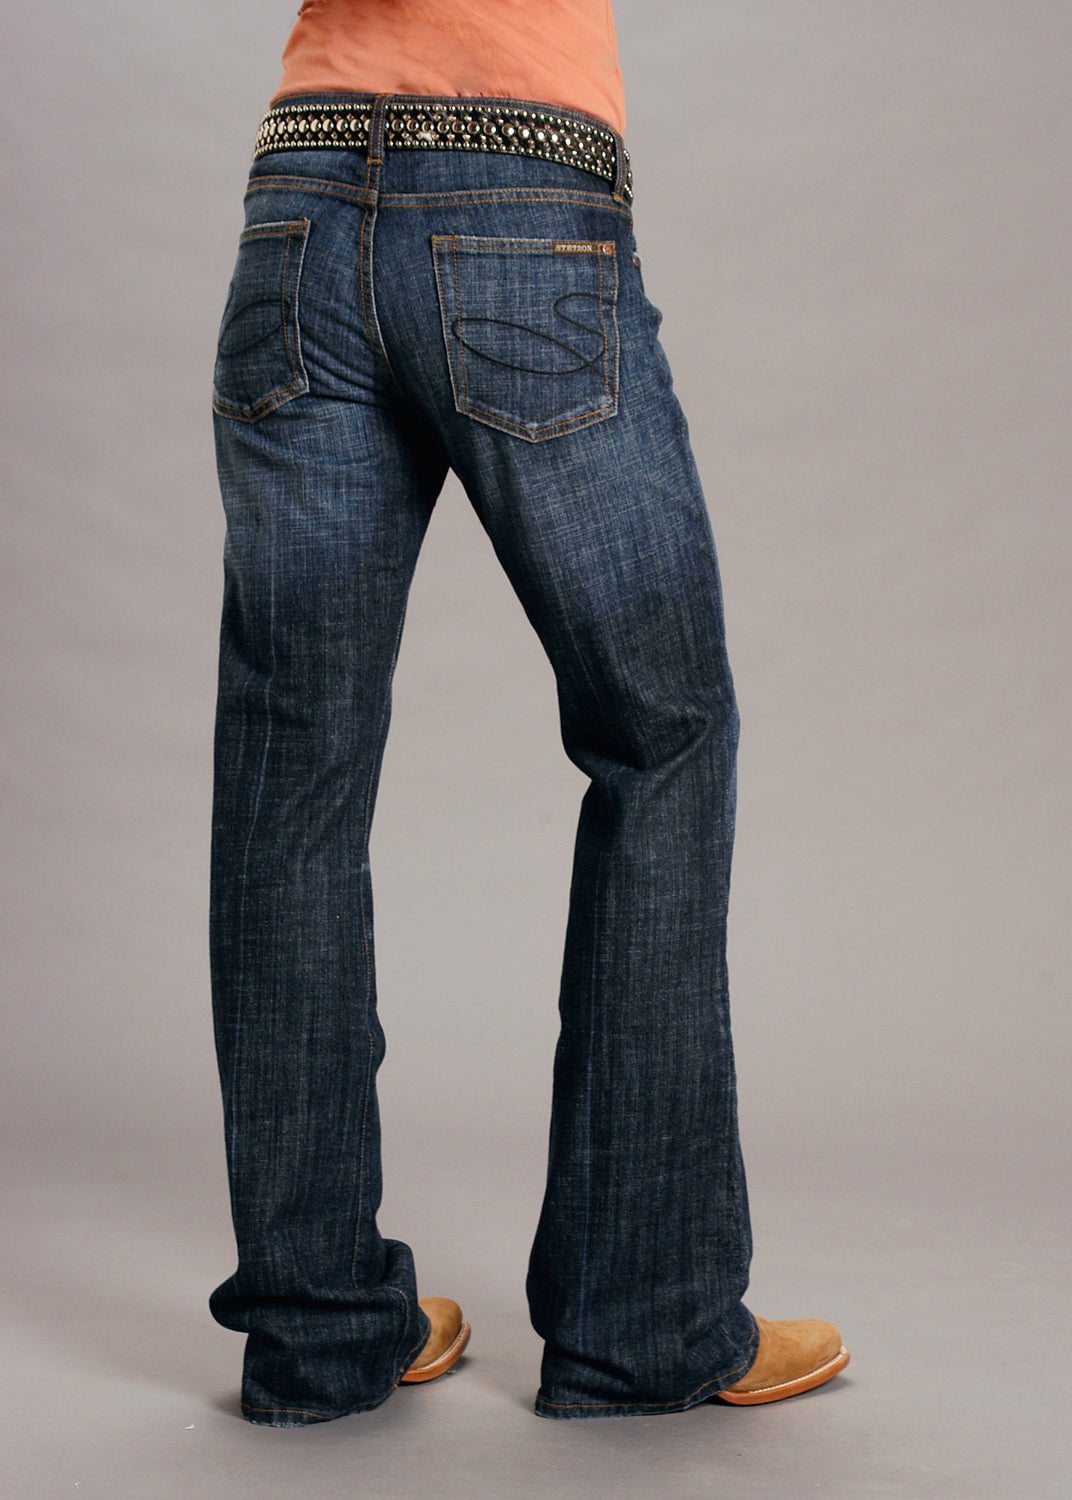 816 Classic Boot Cut Jeans In Dark Wash